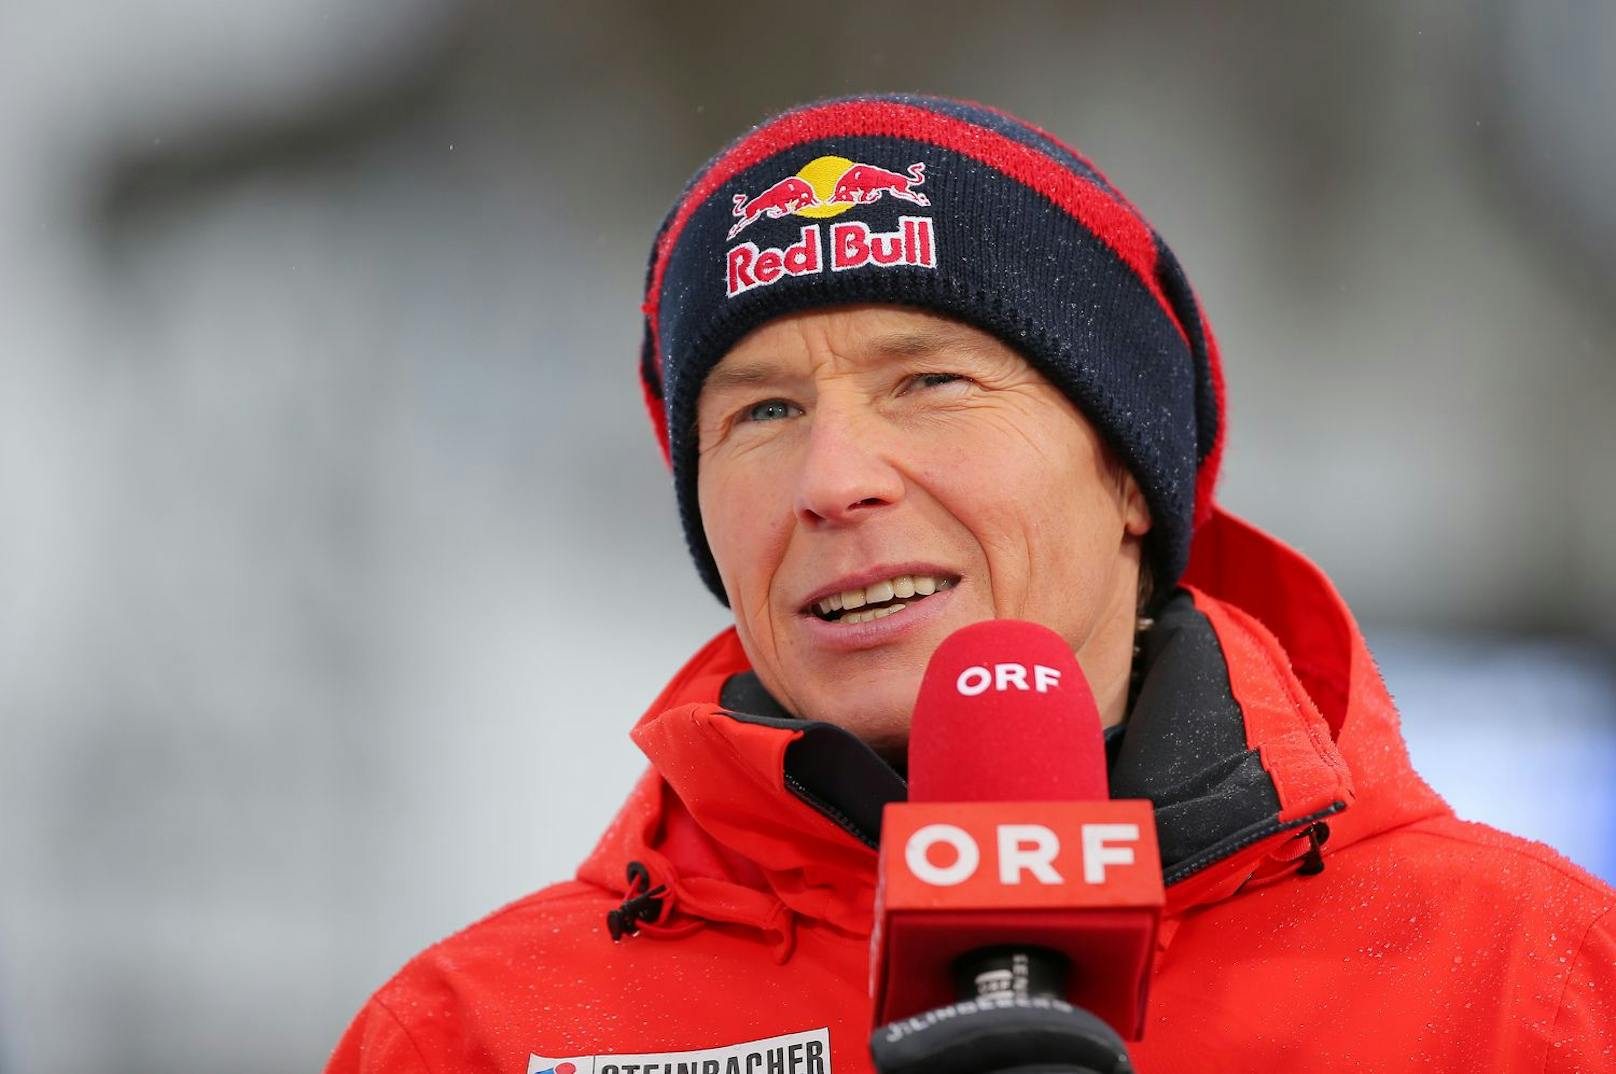 Andreas Goldberger analysiert für den ORF seit Jahren die Skisprungbewerbe, kümmert sich mit seinem "Goldi Cup" aber zugleich um die nächste Generation der Springer.